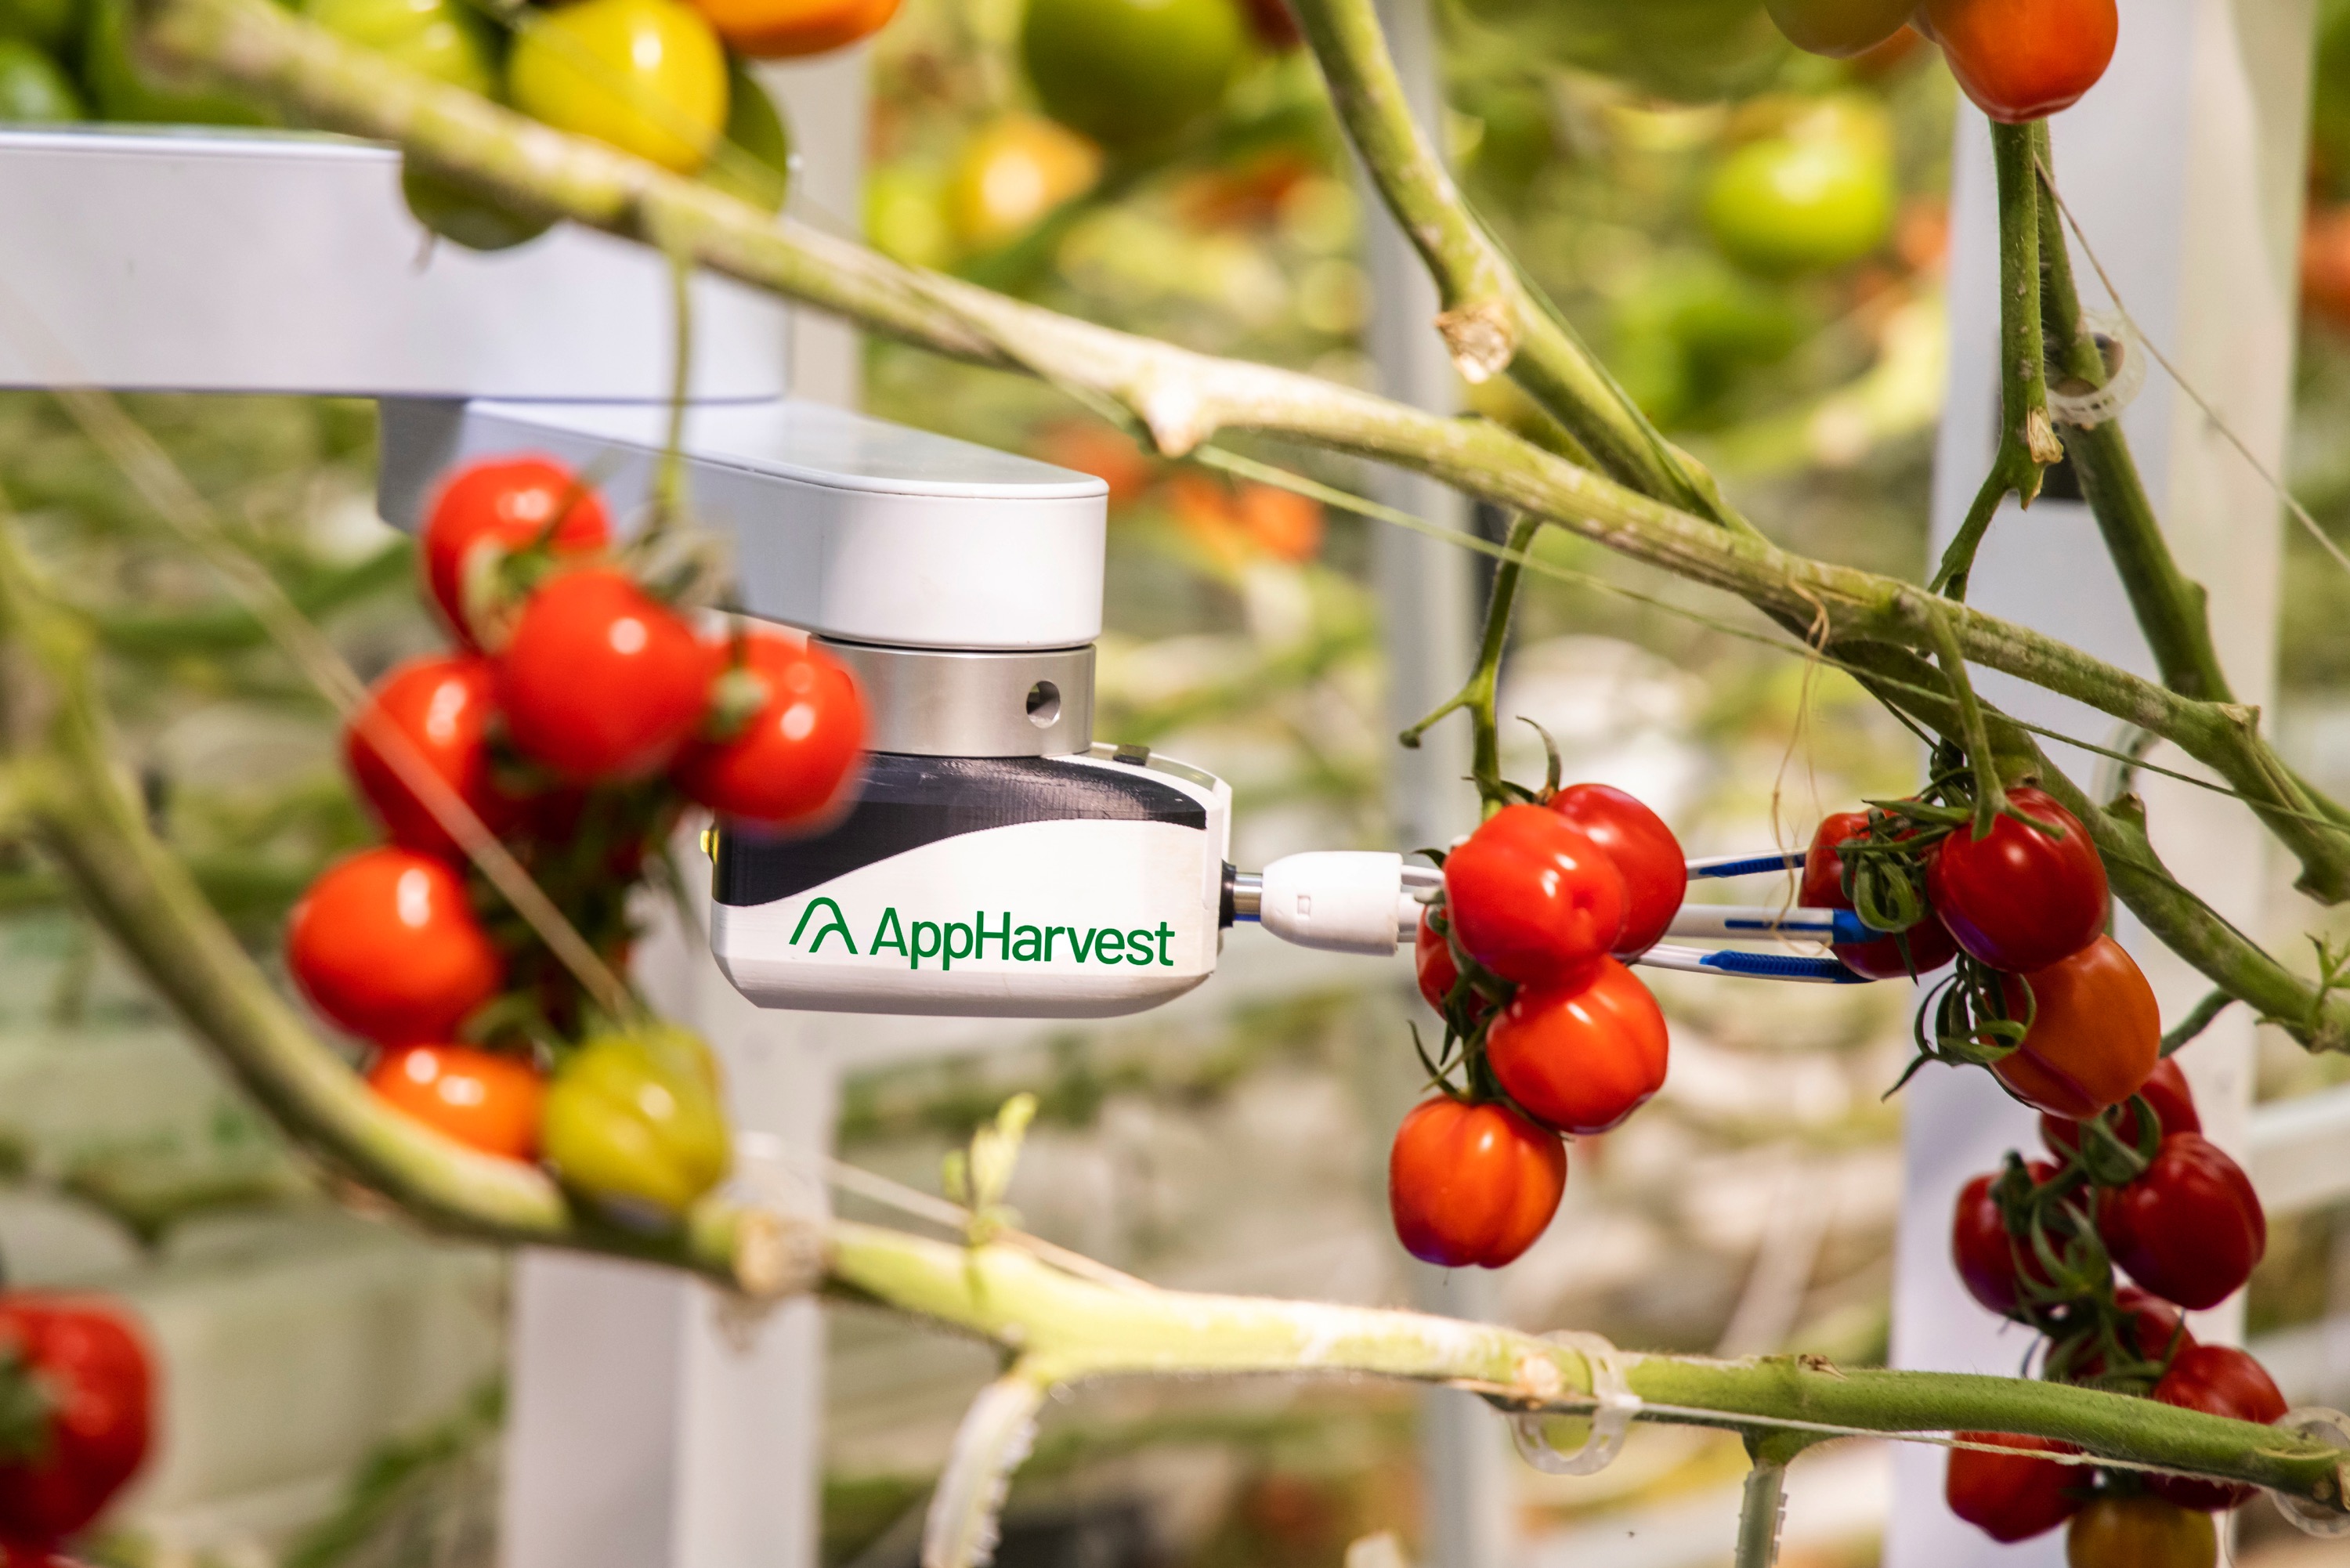 미국의 수직농업 스타트업 앱하베스트의 토마토 재배 솔루션 /사진제공=AppHarvest